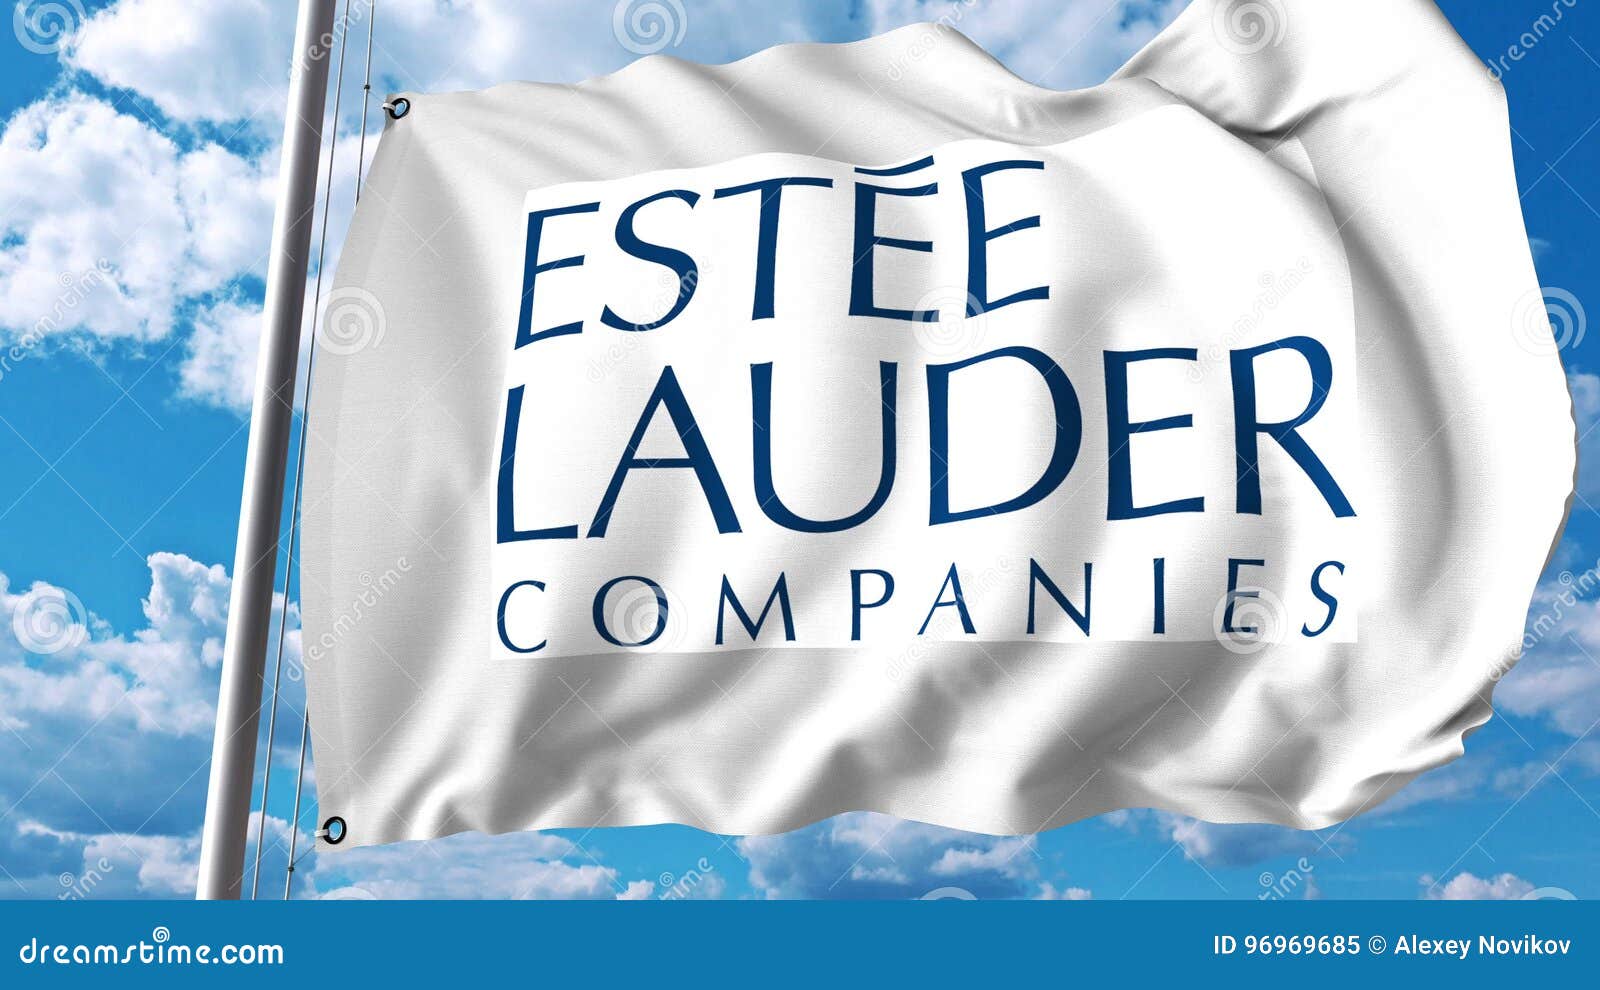 estee lauder companies logo